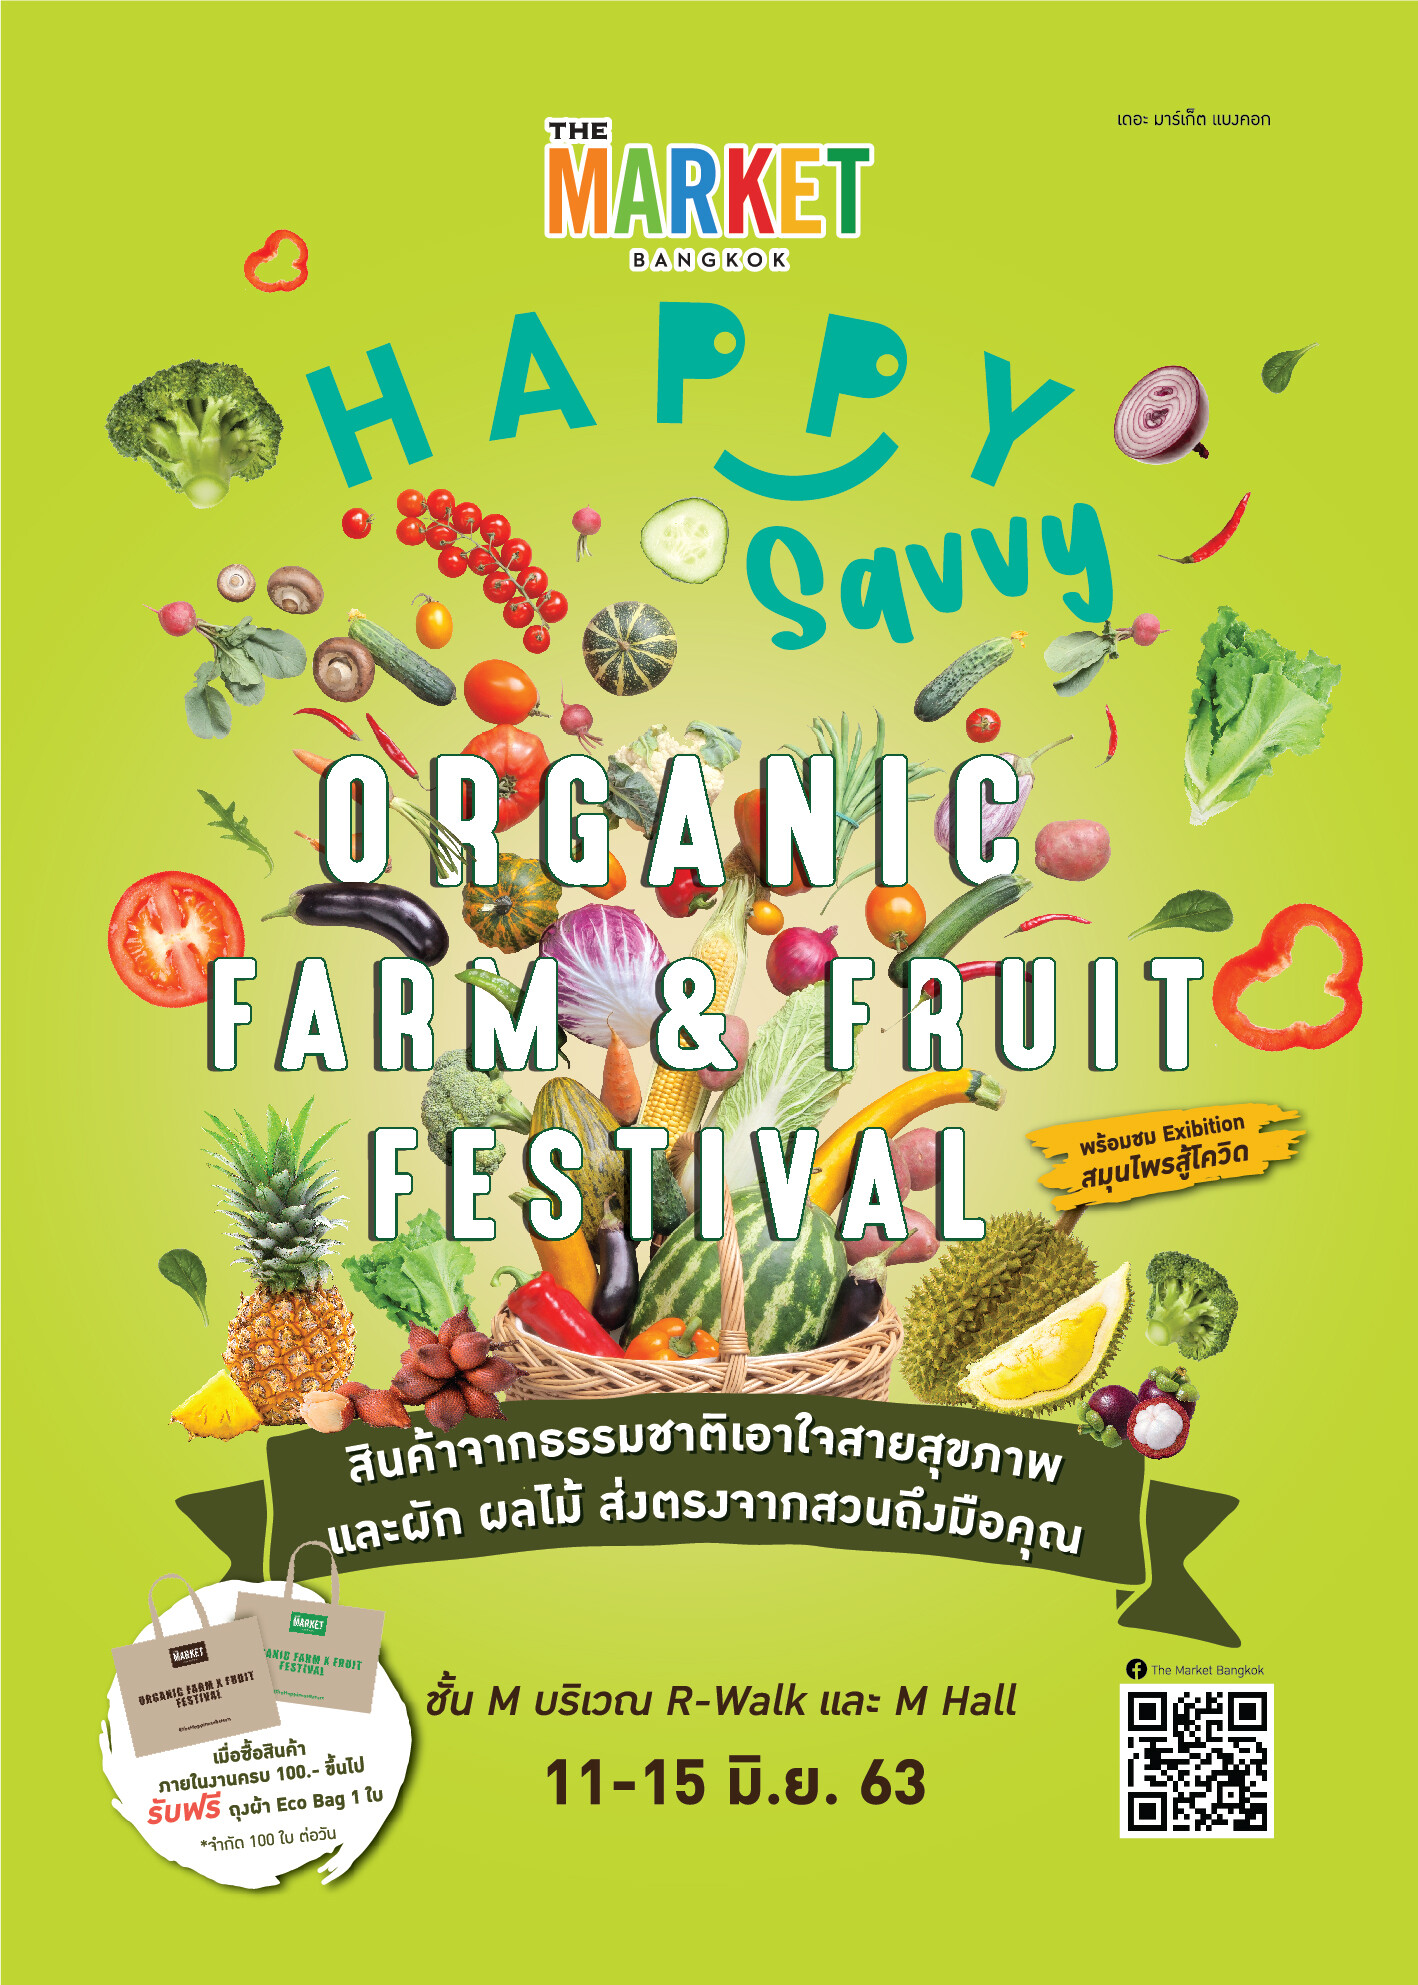 ศูนย์การค้า เดอะ มาร์เก็ต แบงคอก (ย่านราชประสงค์) จัดงาน “Happy Savvy: Organic Farm & Fruit Festival” วันที่ 11 – 15 มิถุนายน 2563